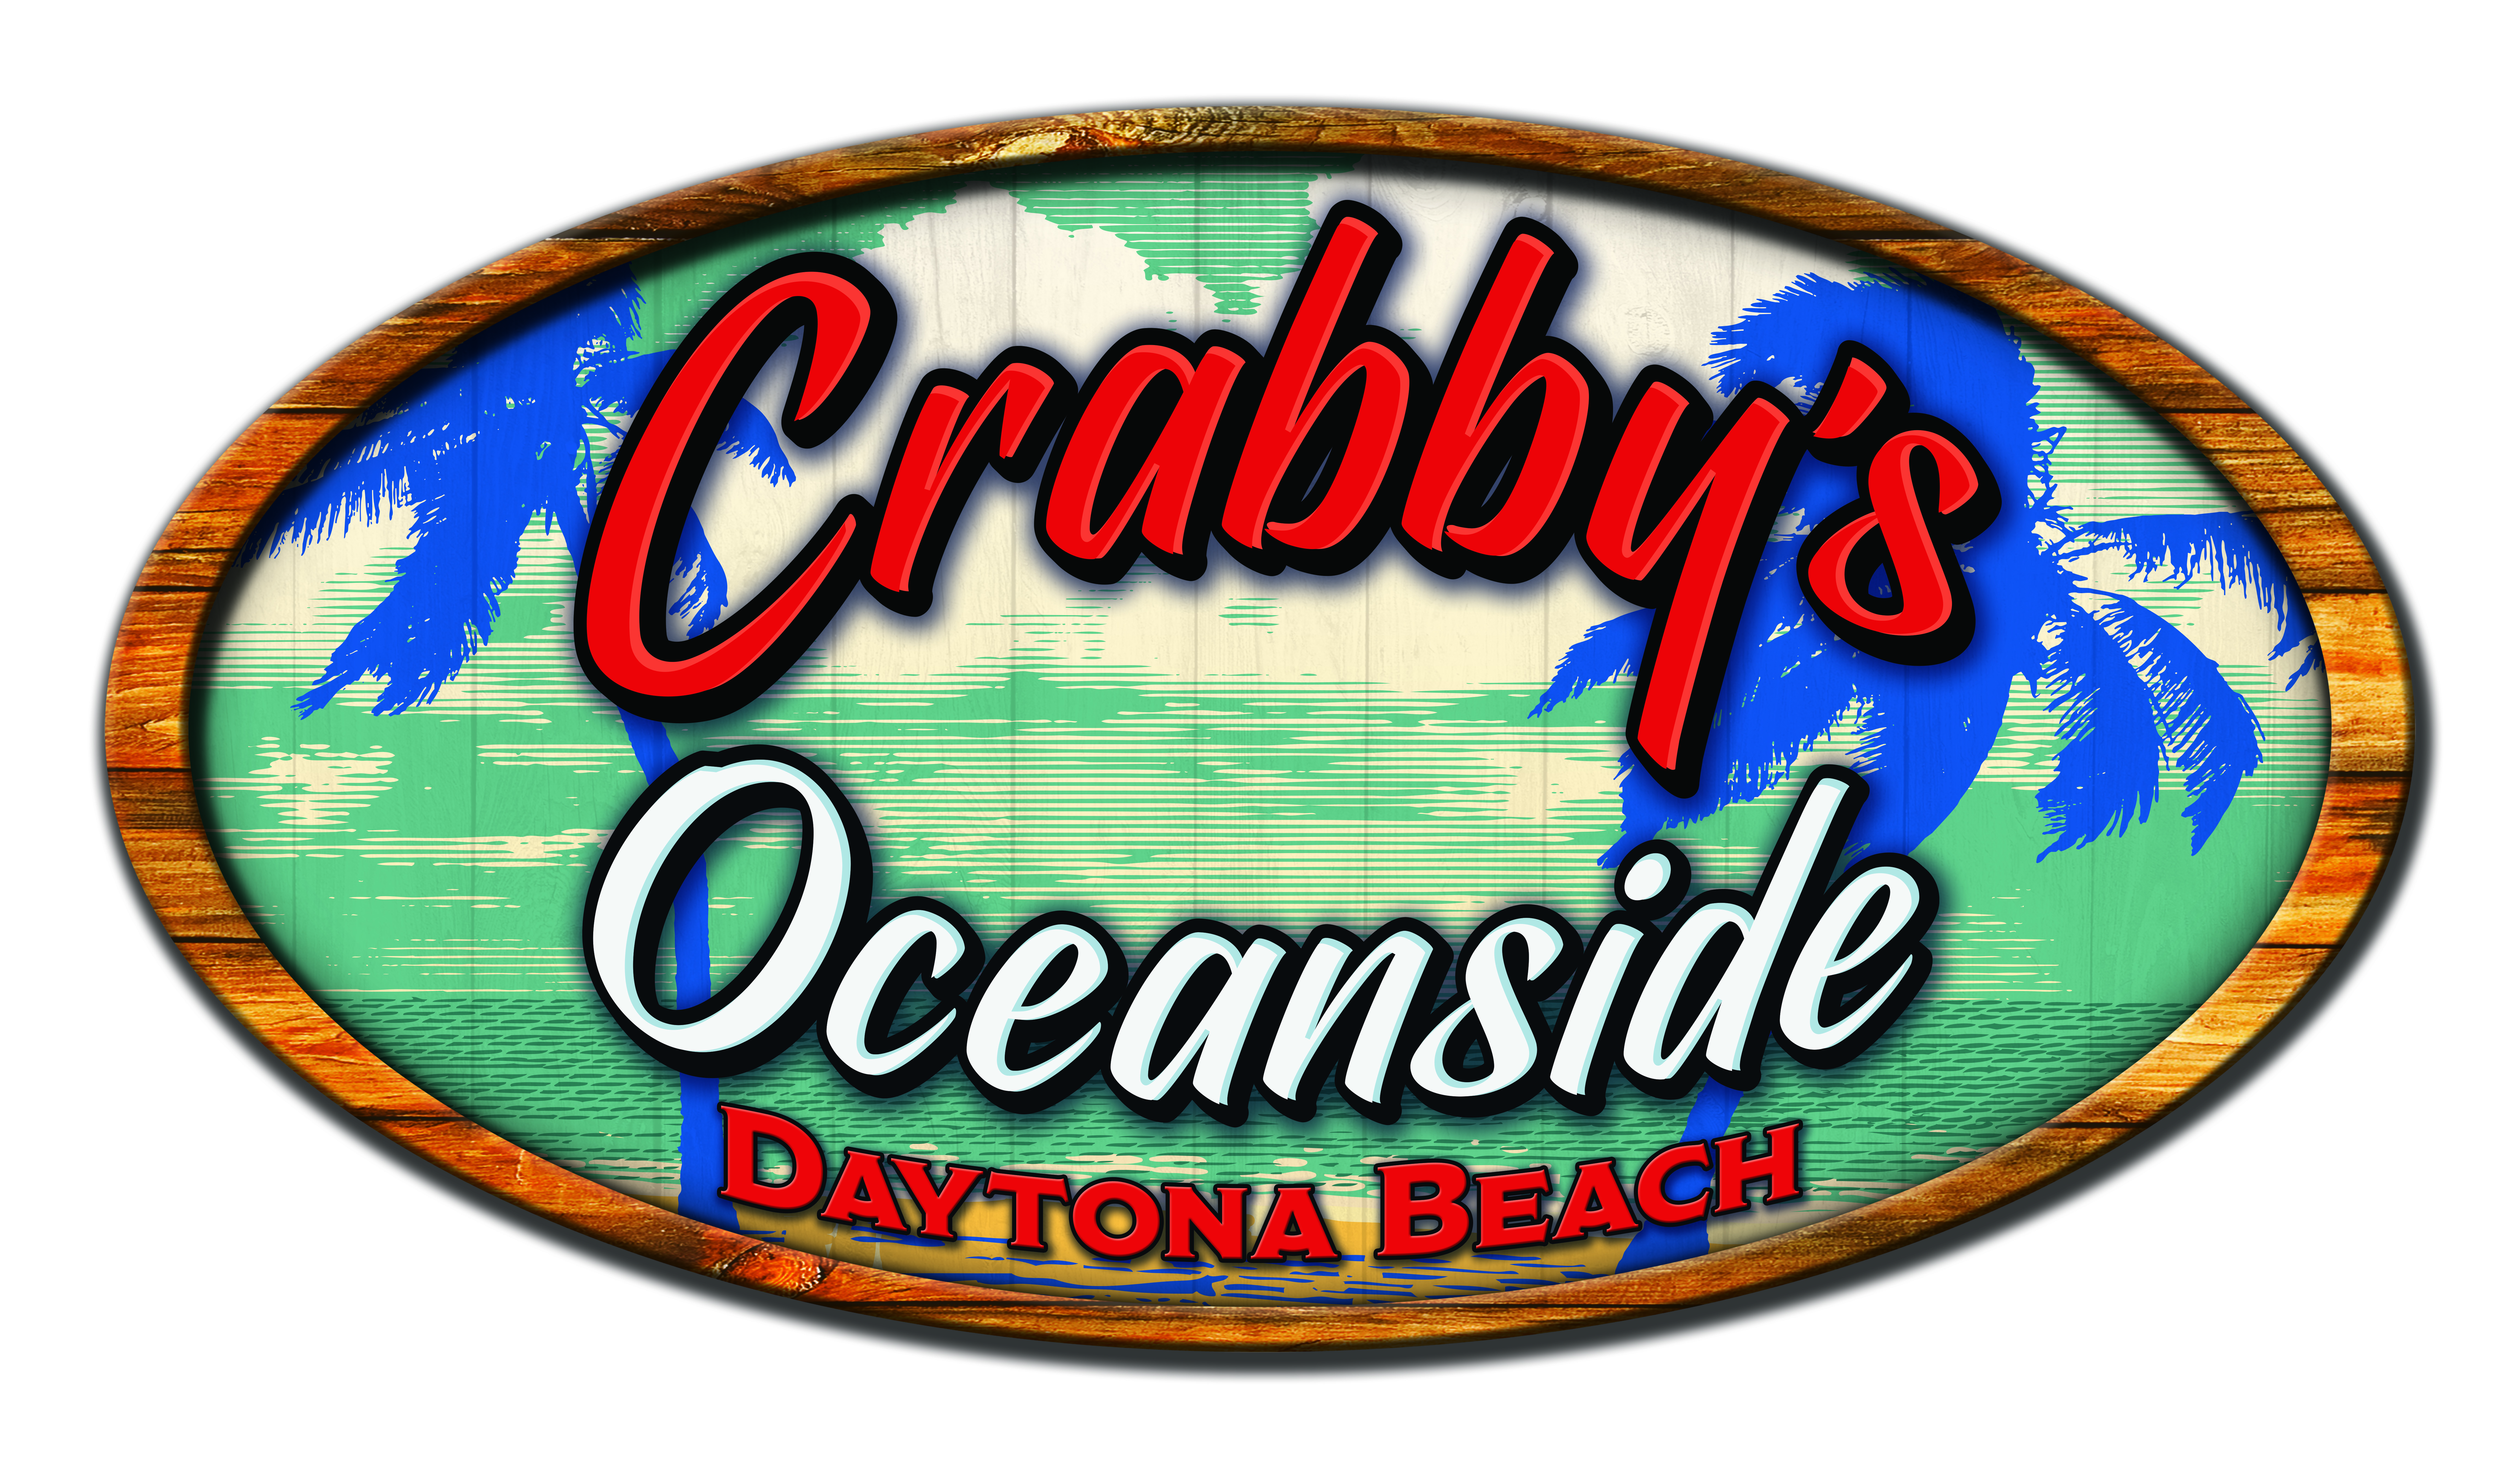 Crabby's Oceanside 